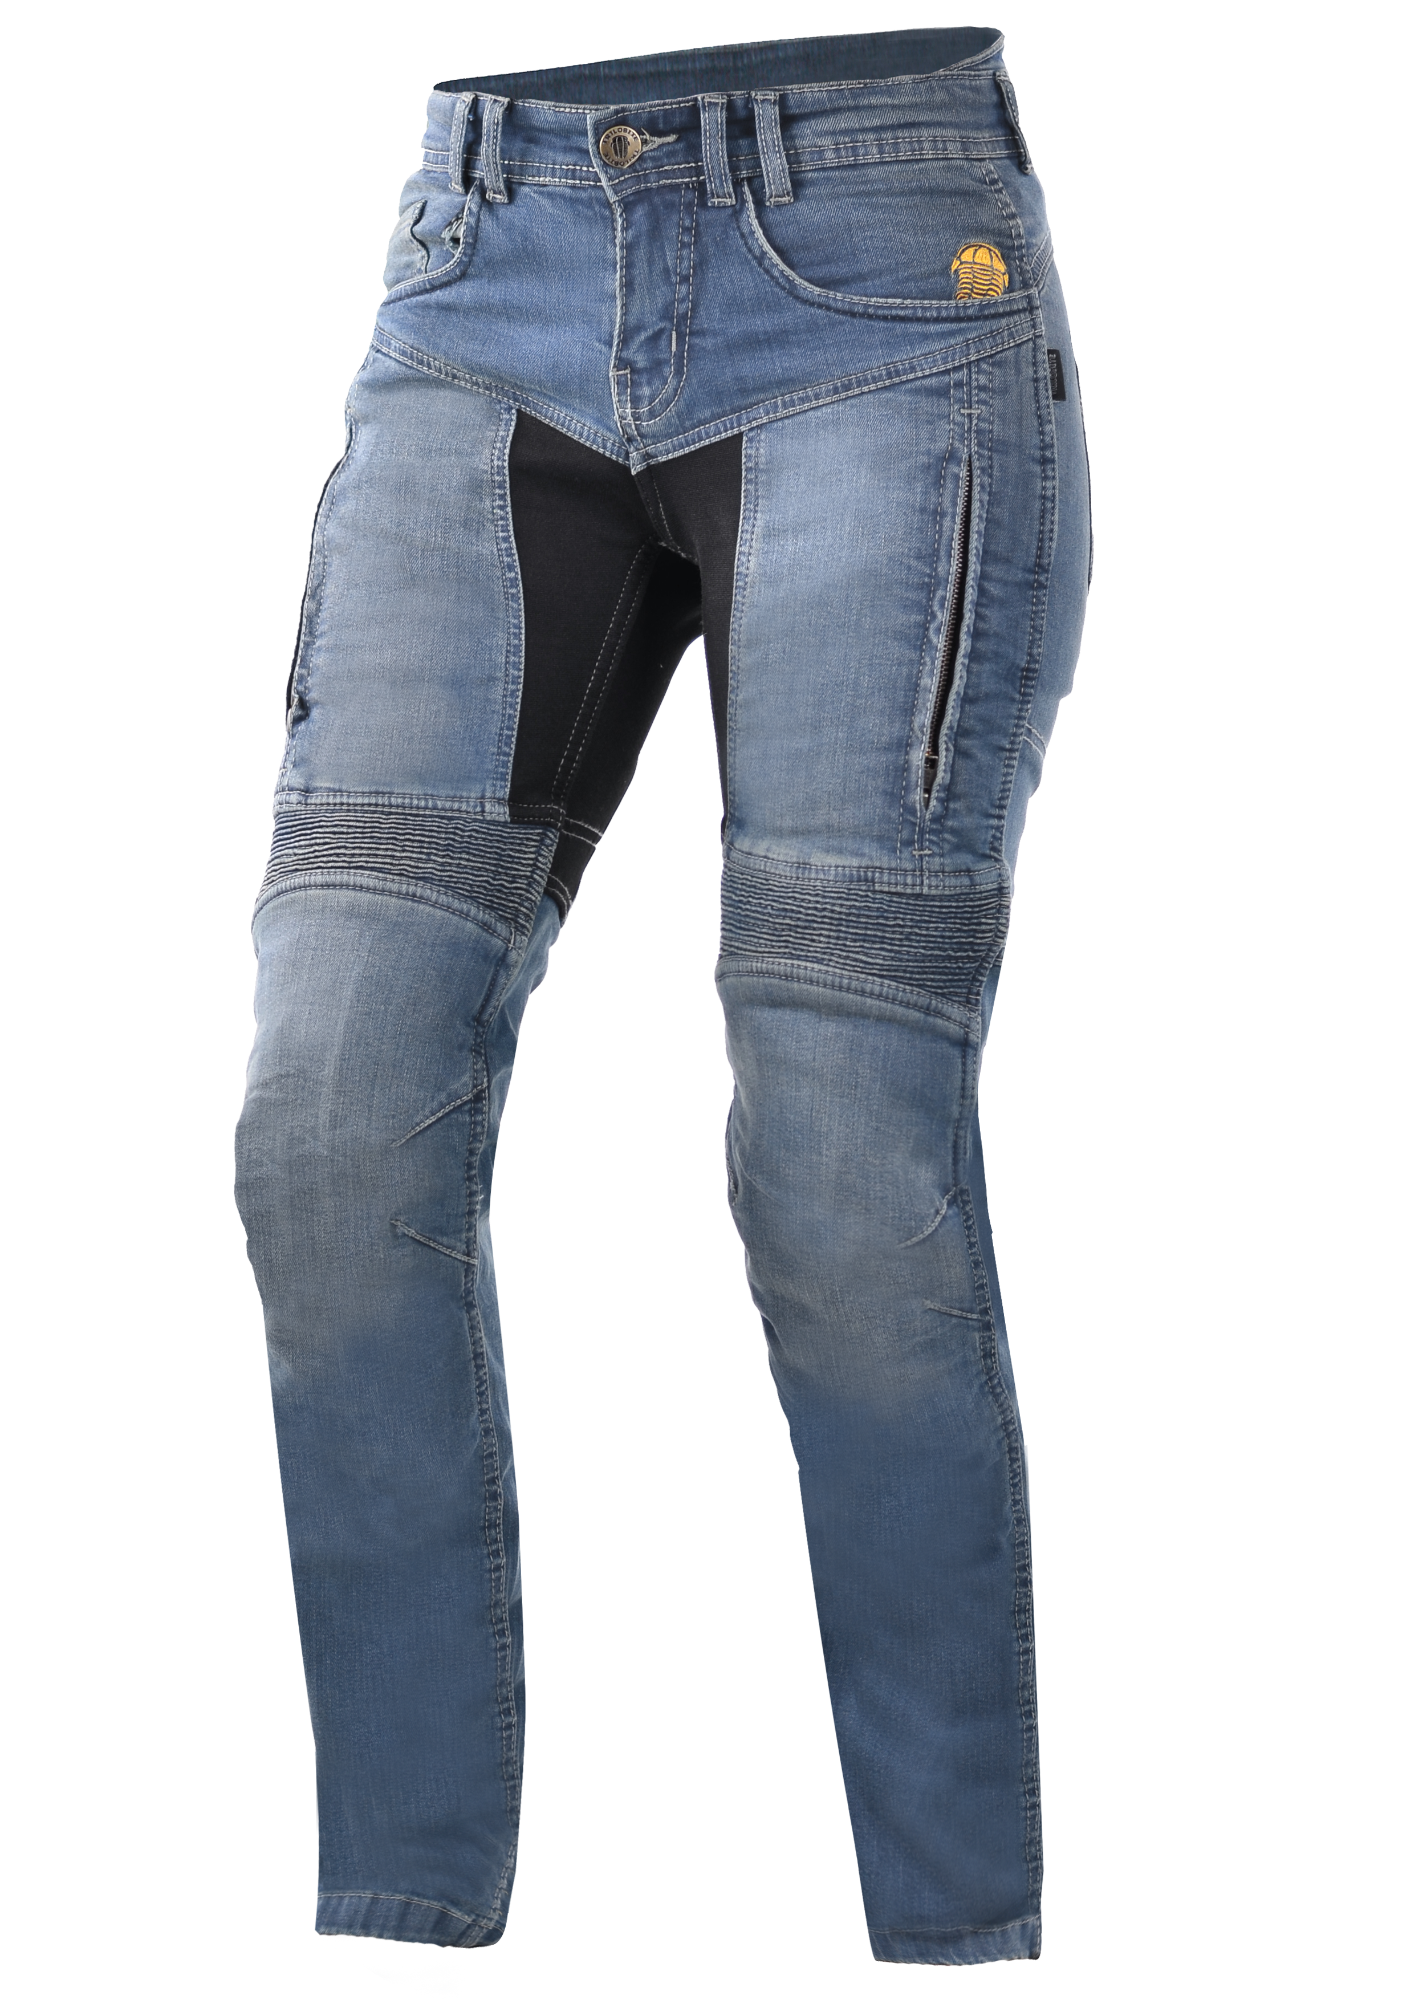 Image of Trilobite 661 Parado Slim Fit Ladies Jeans Light Blue Size 34 ID 8596505005227